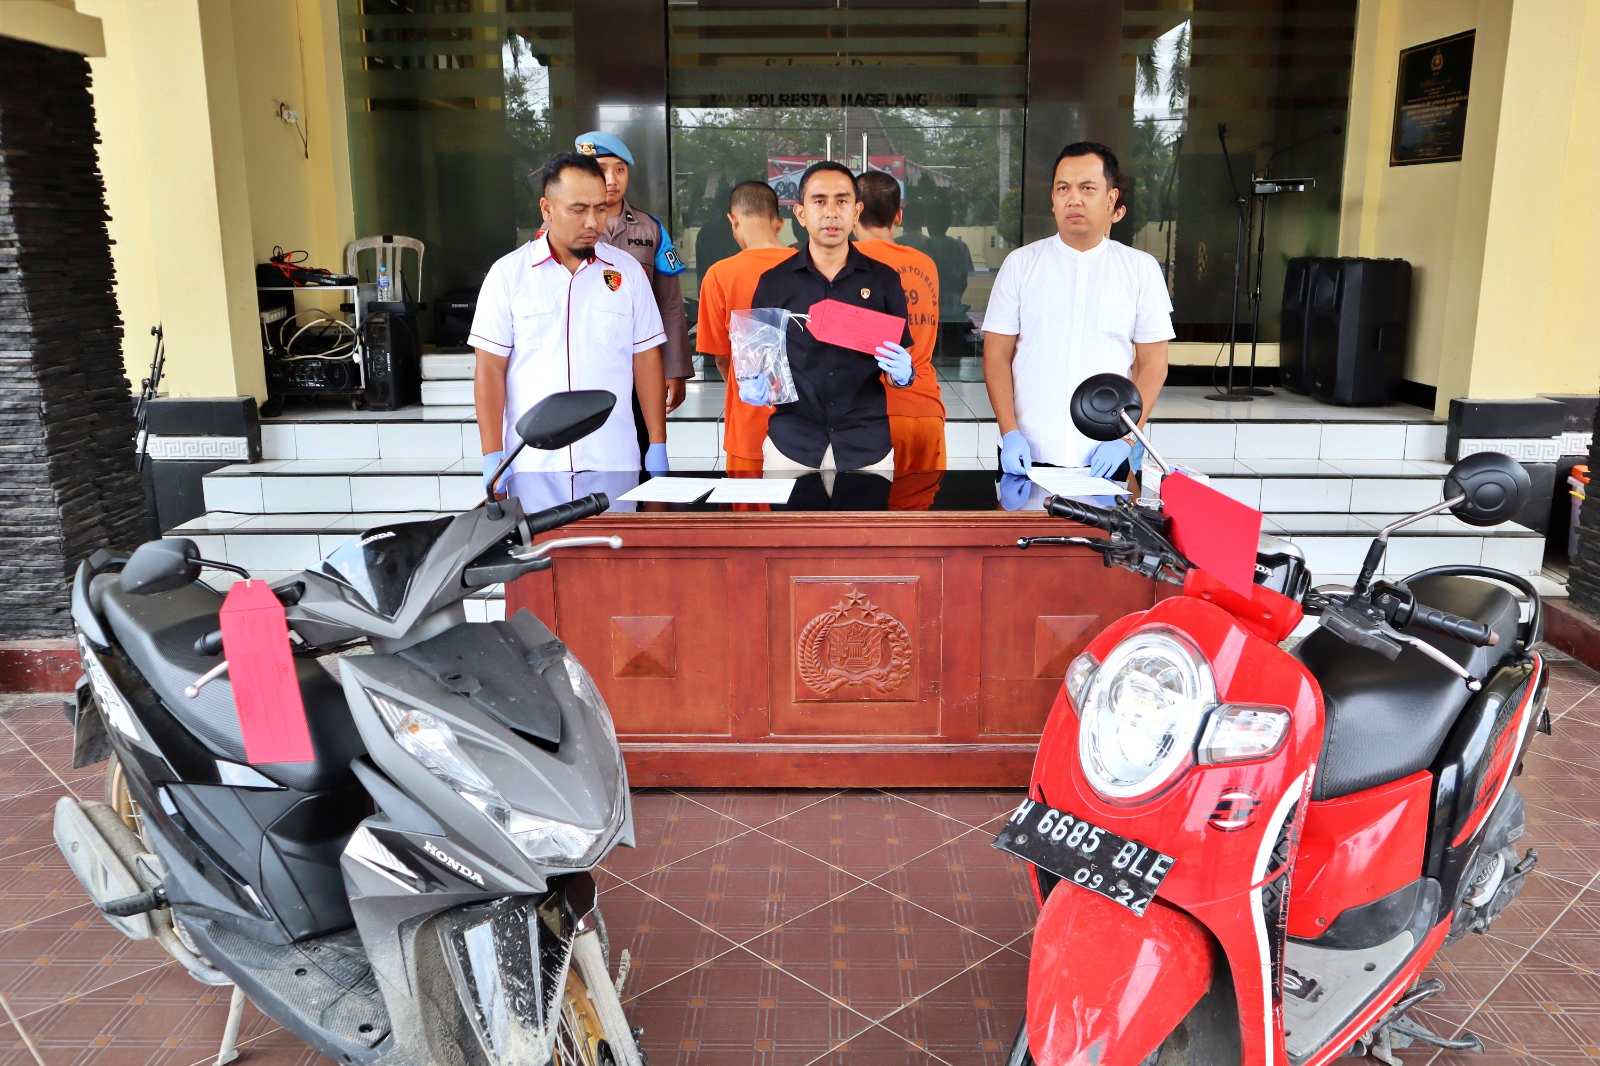 Ungkap Kasus sindikat pencurian sepeda motor atau curanmor antar kabupaten oleh Polresta Magelang